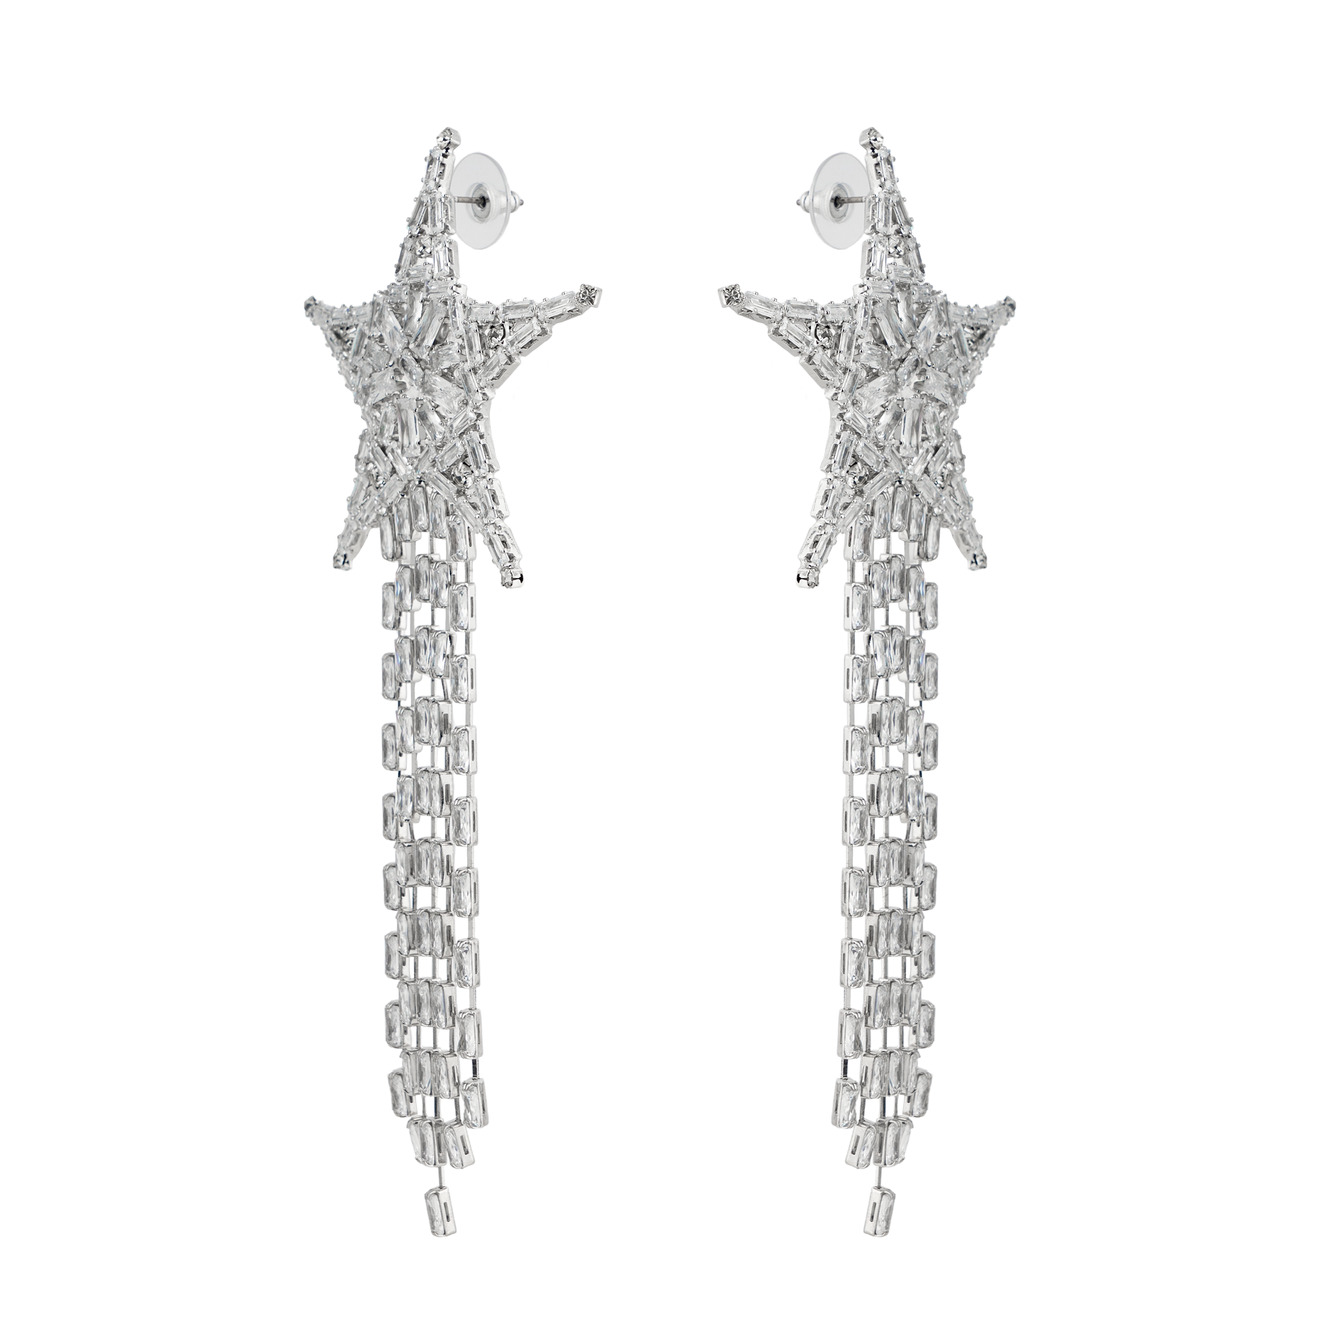 Herald Percy Серебристые бисерные серьги-звезды с кристаллами herald percy серебристые серьги звезды с кристаллами и белыми бусинами